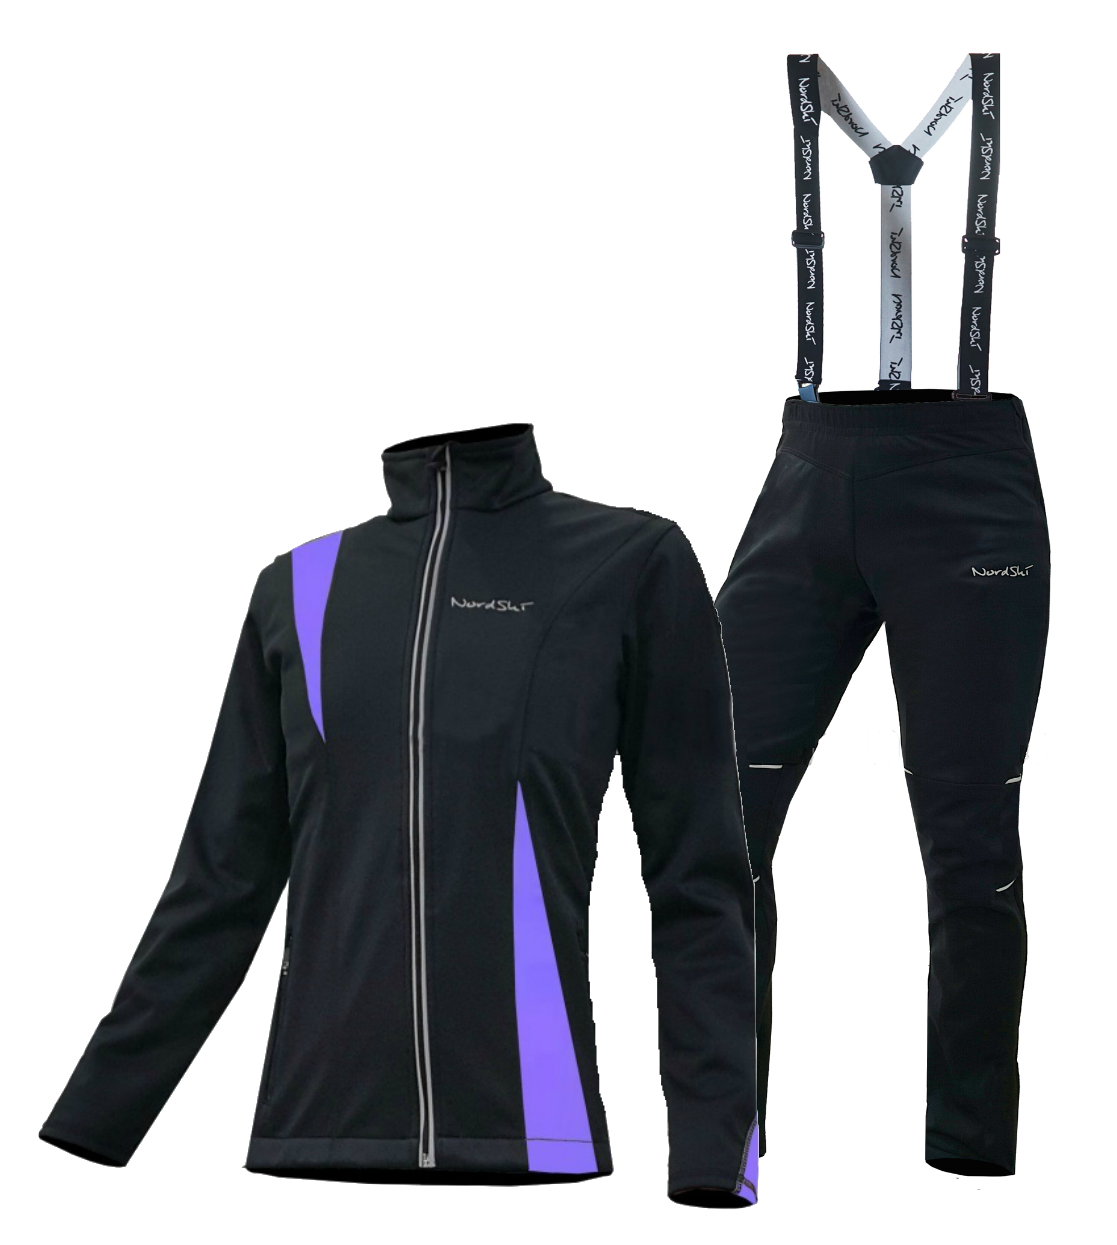 Nordski Premium Active разминочный лыжный костюм женский Black-Violet. Разминочный костюм Craft для беговых лыж женский. Разминочный костюм женский адидас. Разминочный костюм для лыжников Nordski Premium. Разминочный костюм лыжи